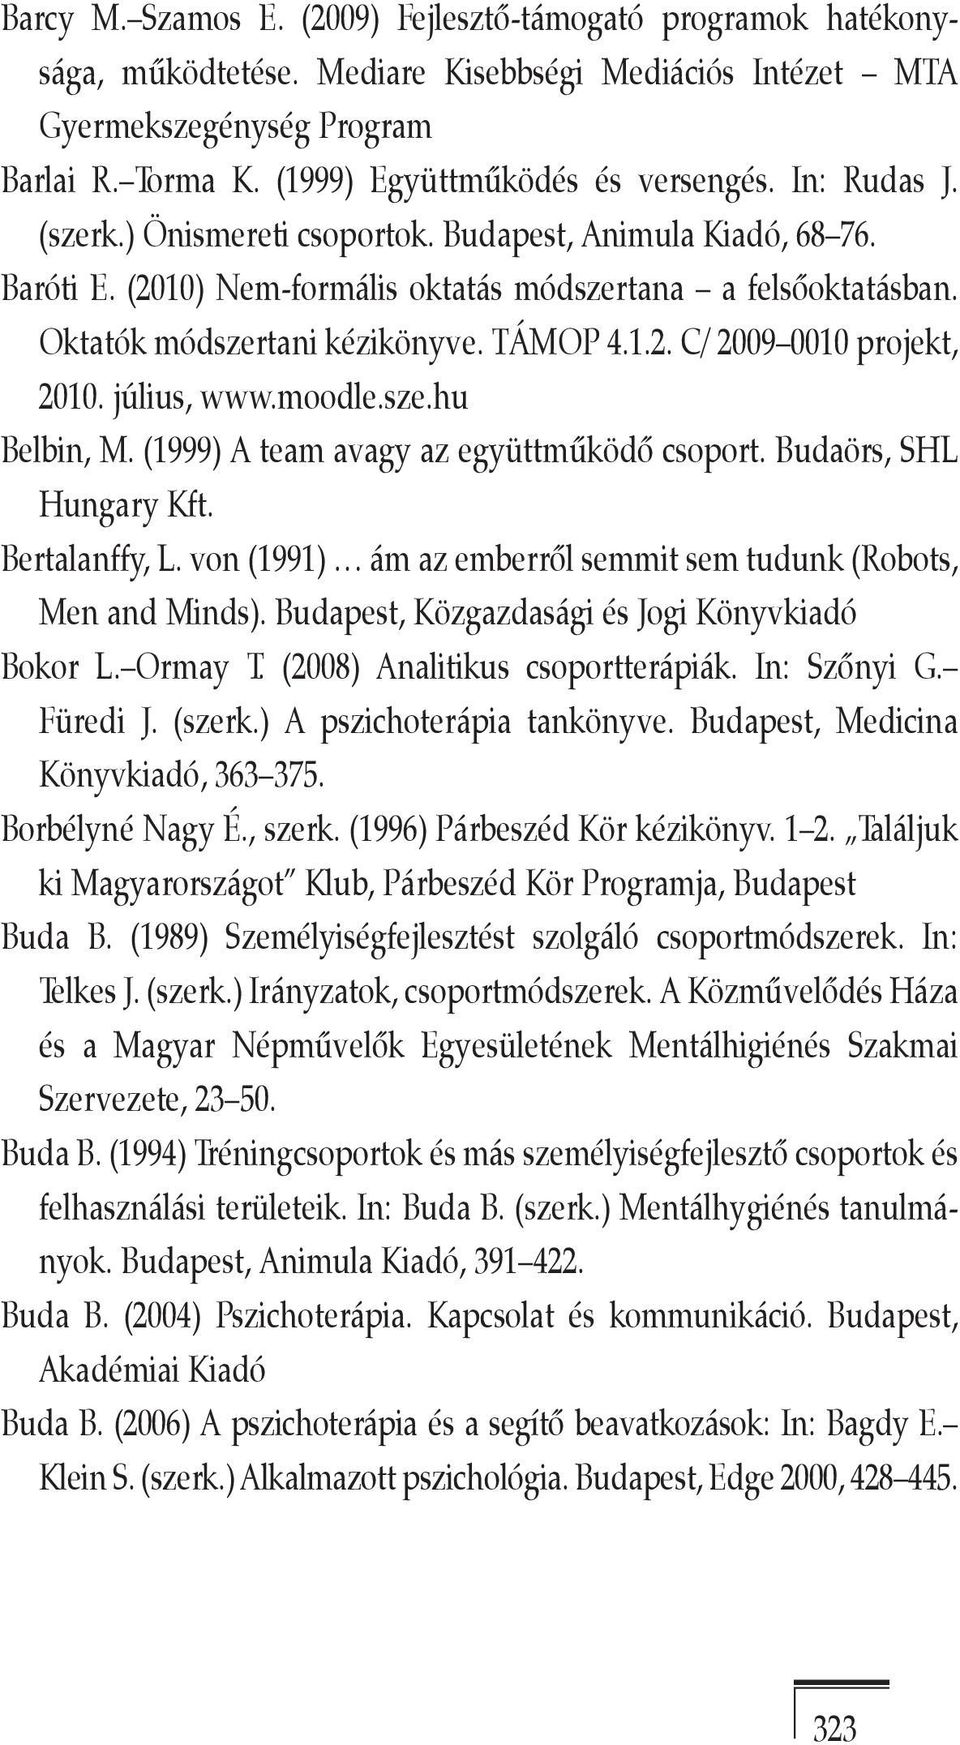 Oktatók módszertani kézikönyve. TÁMOP 4.1.2. C/ 2009 0010 projekt, 2010. július, www.moodle.sze.hu Belbin, M. (1999) A team avagy az együttműködő csoport. Budaörs, SHL Hungary Kft. Bertalanffy, L.